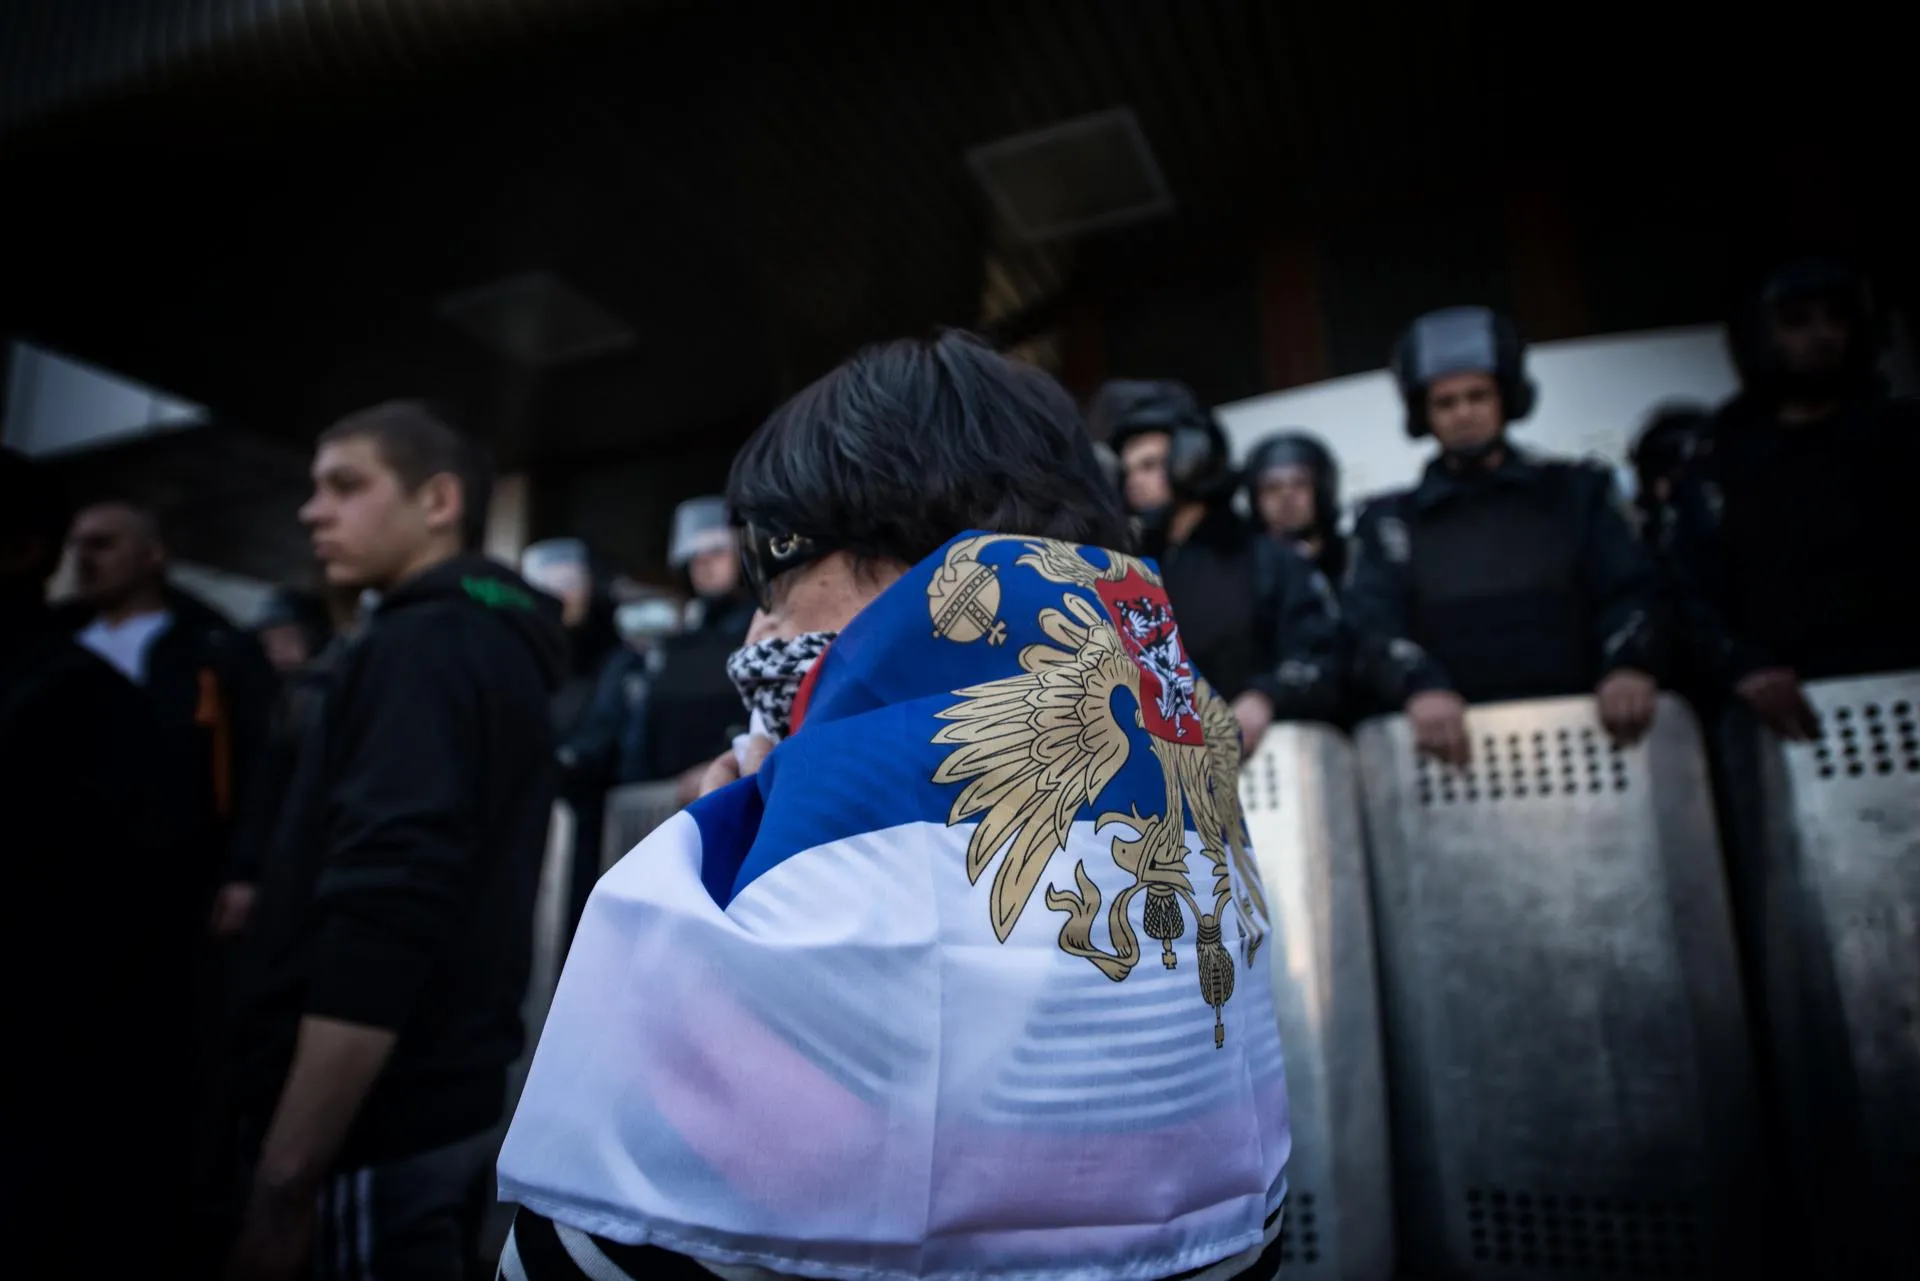 Пророссийский митинг в Донецке, март 2014 года / Romain Carre / ZUMAPRESS.com